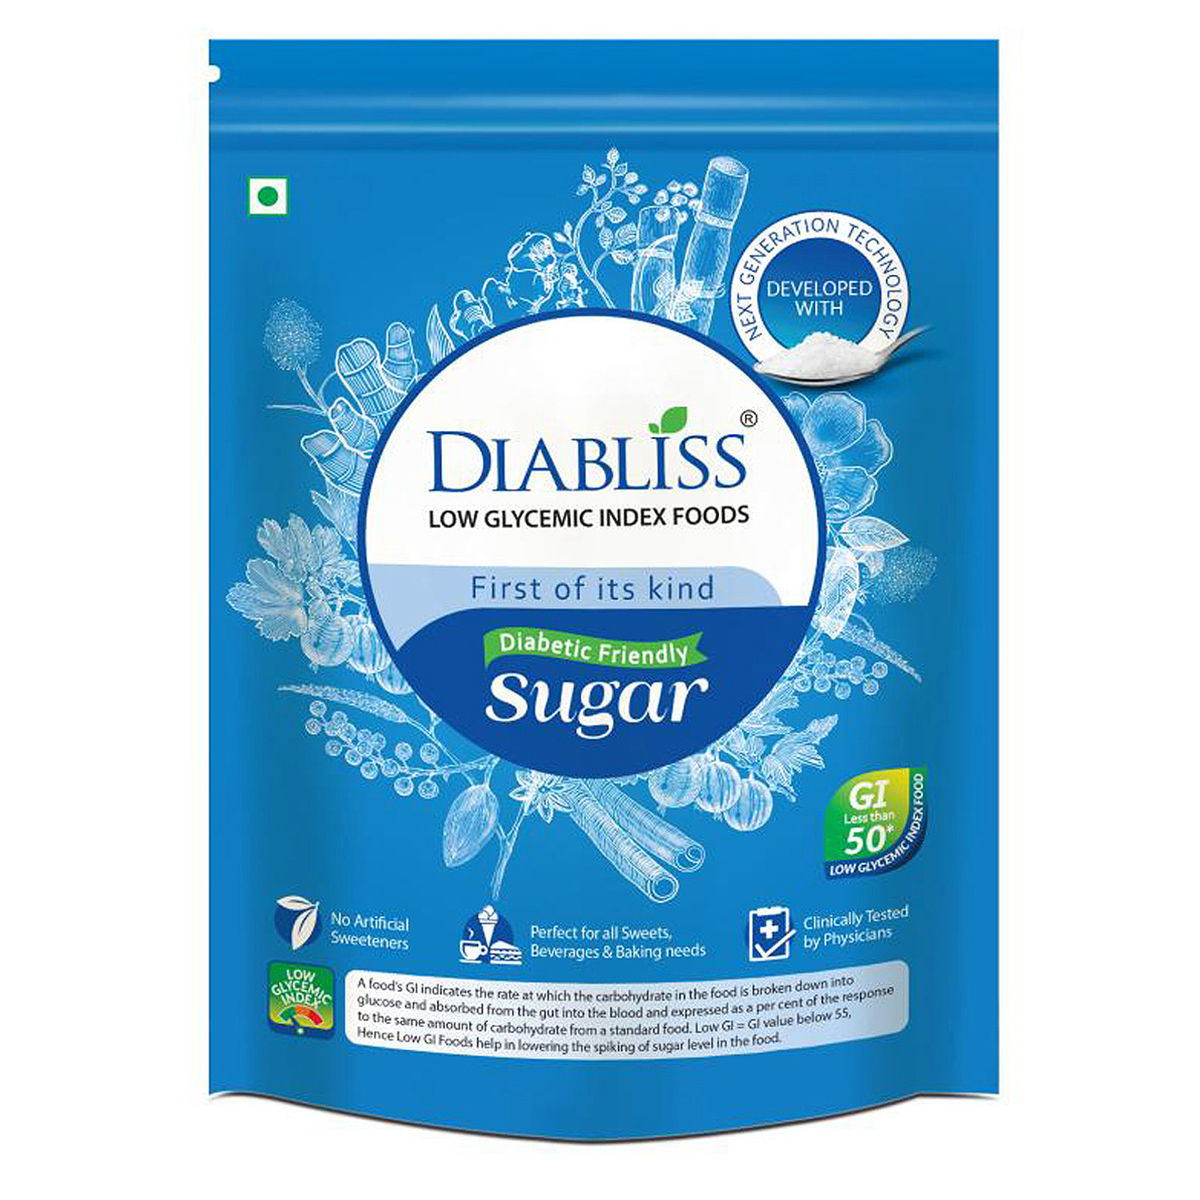 Buy Diabliss Diabetic Friendly Sugar, 500 gm Online